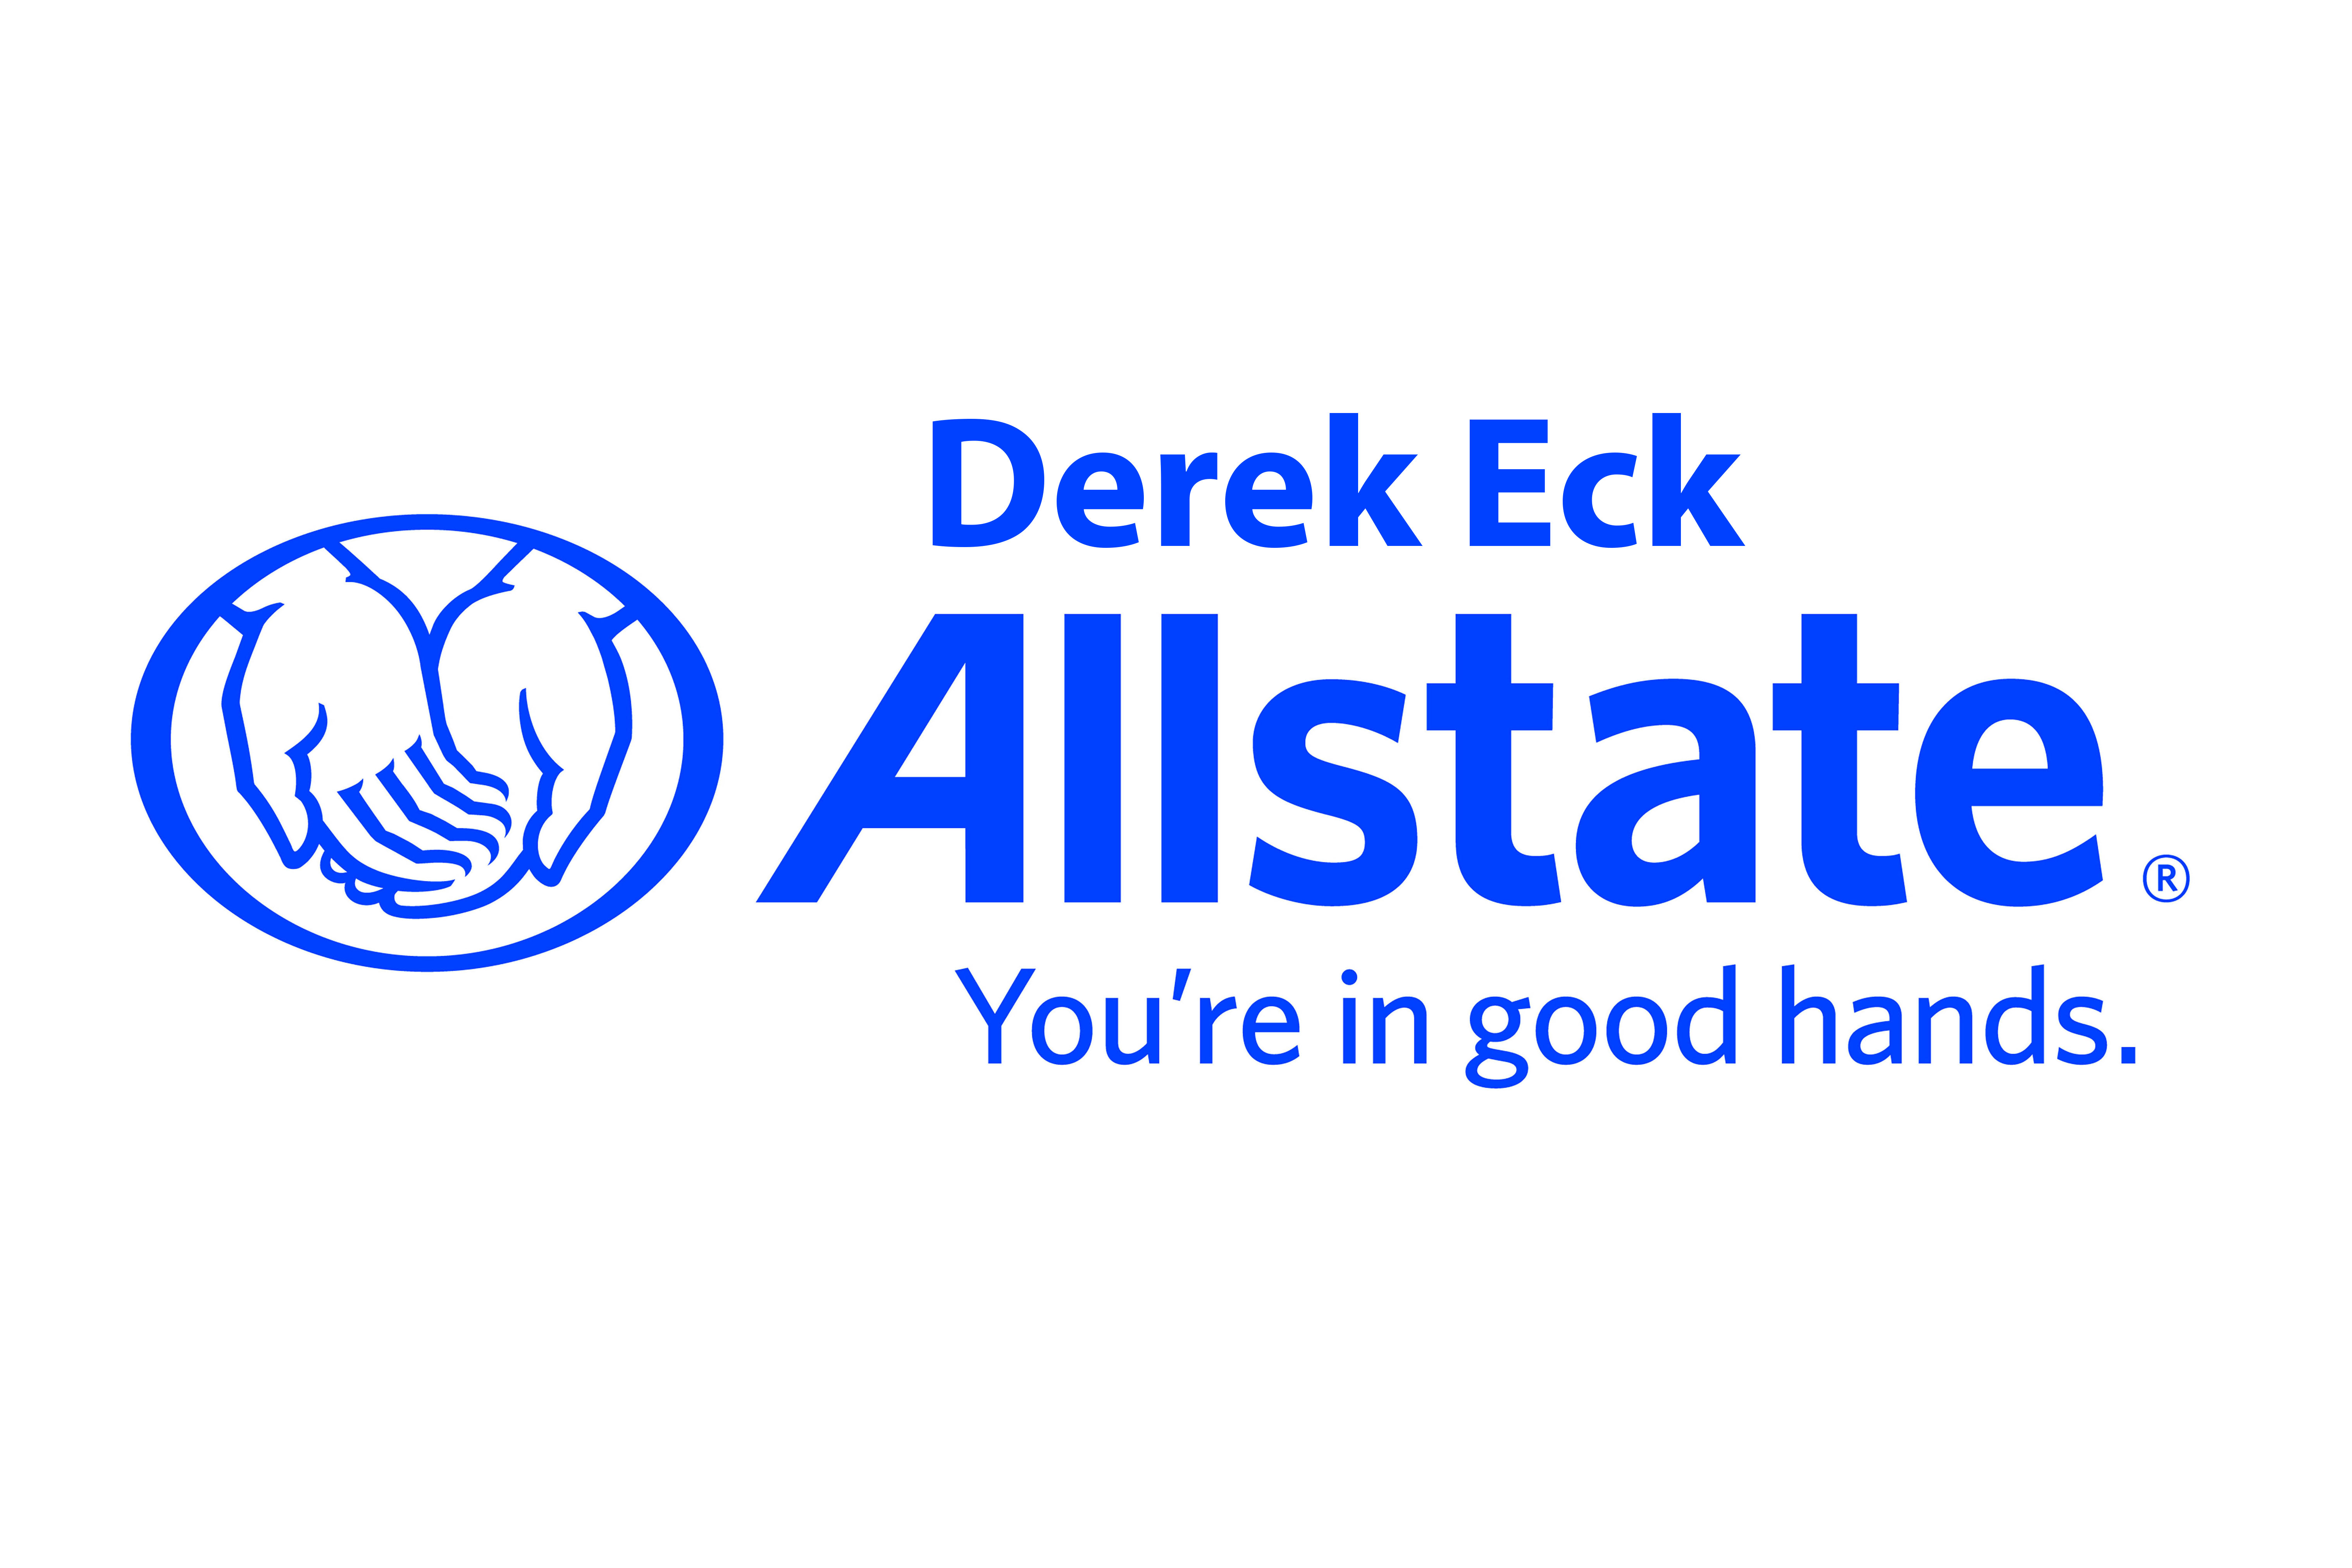 Derek Eck: Allstate Insurance